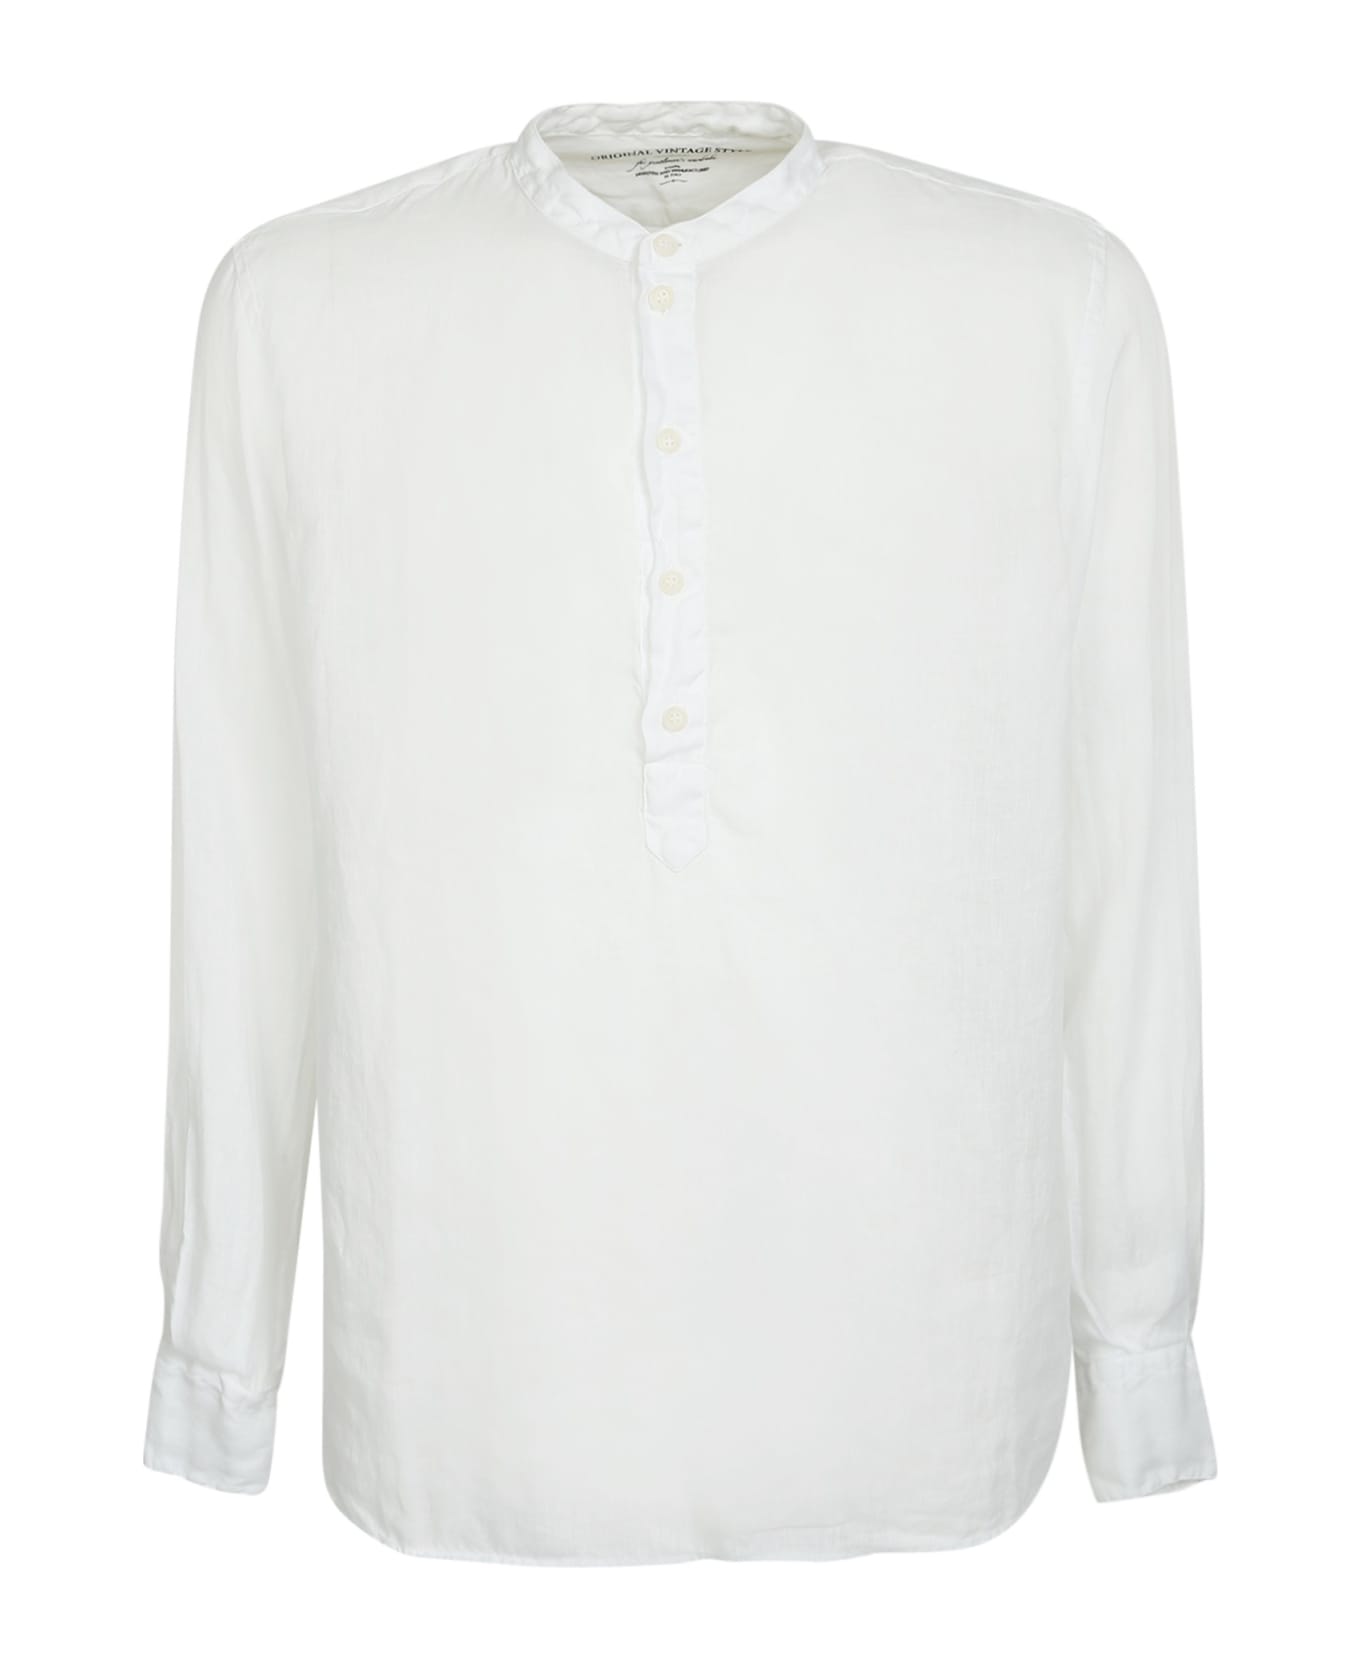 Original Vintage Style Linen Polo Shirt - White